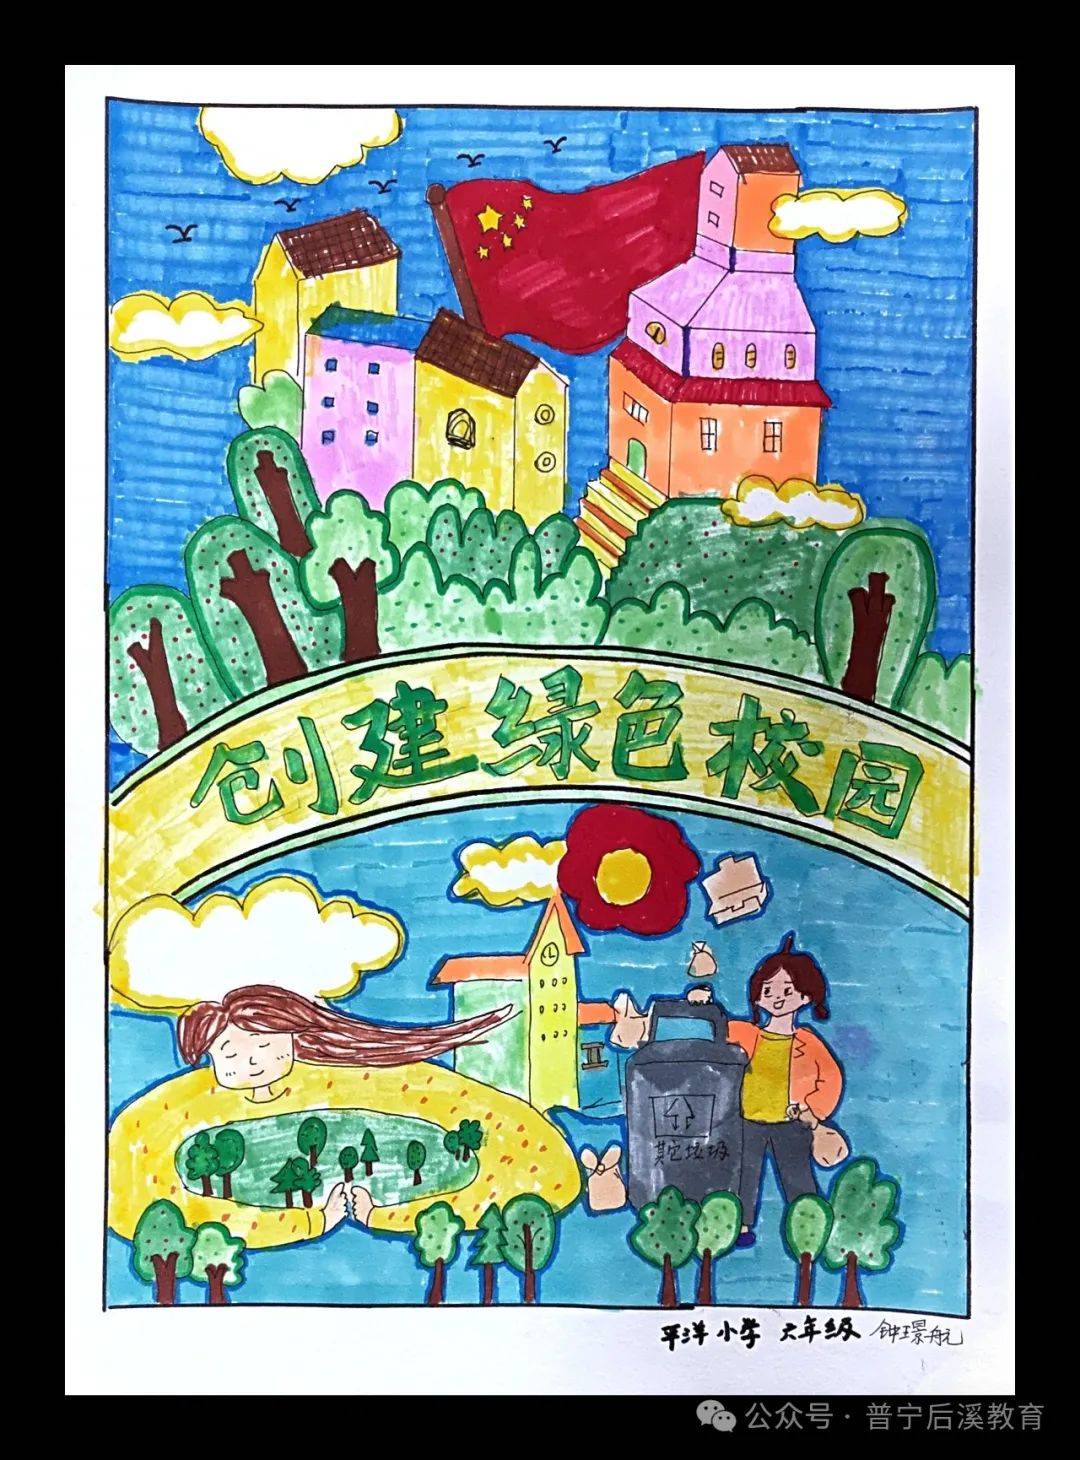 【活动】后溪乡教育组举办中小学绿美校园美术作品评比活动